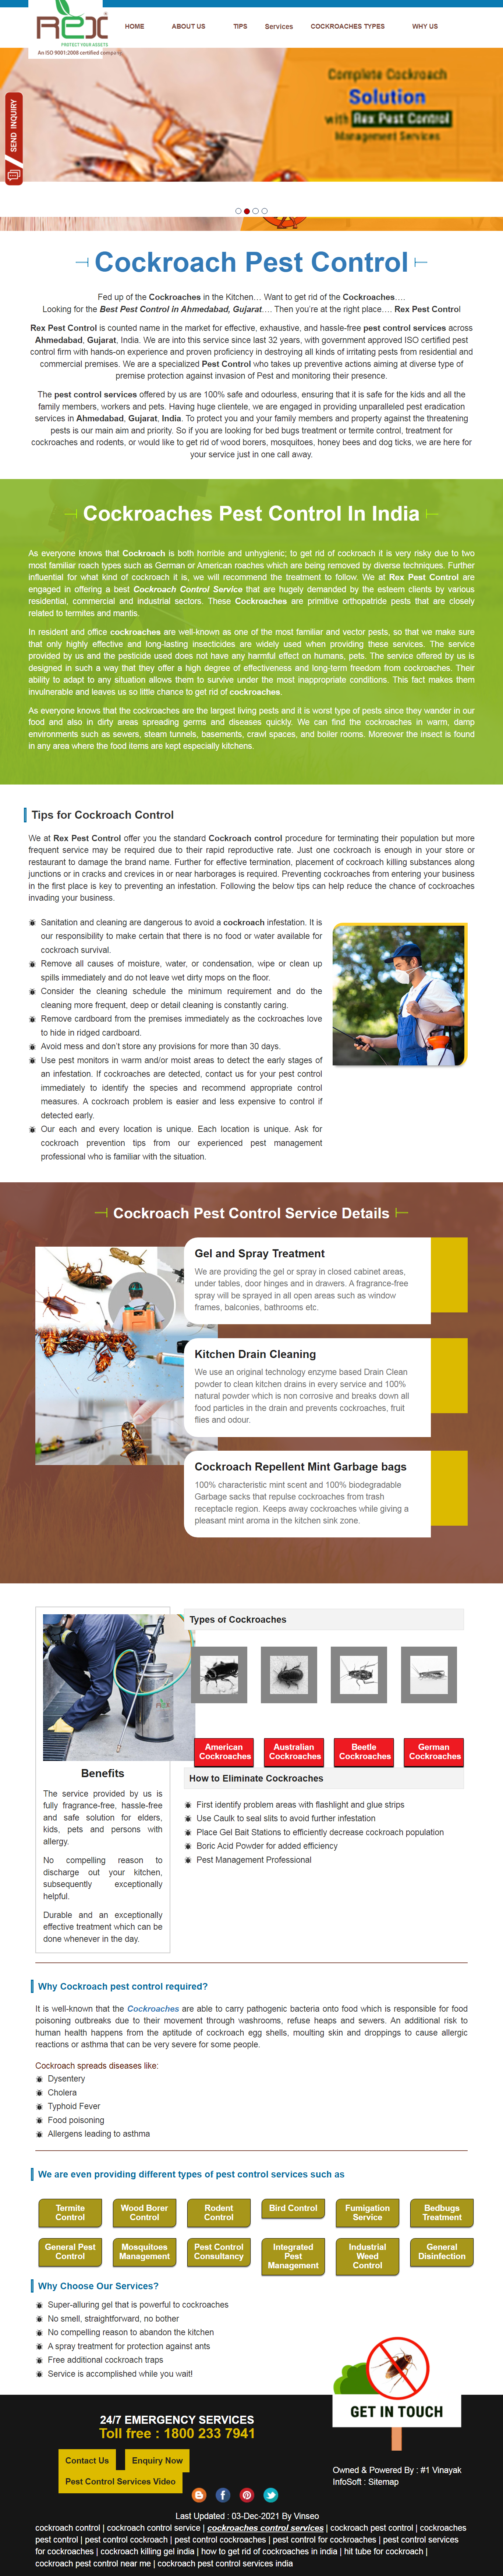 Cockroach-Pest Control